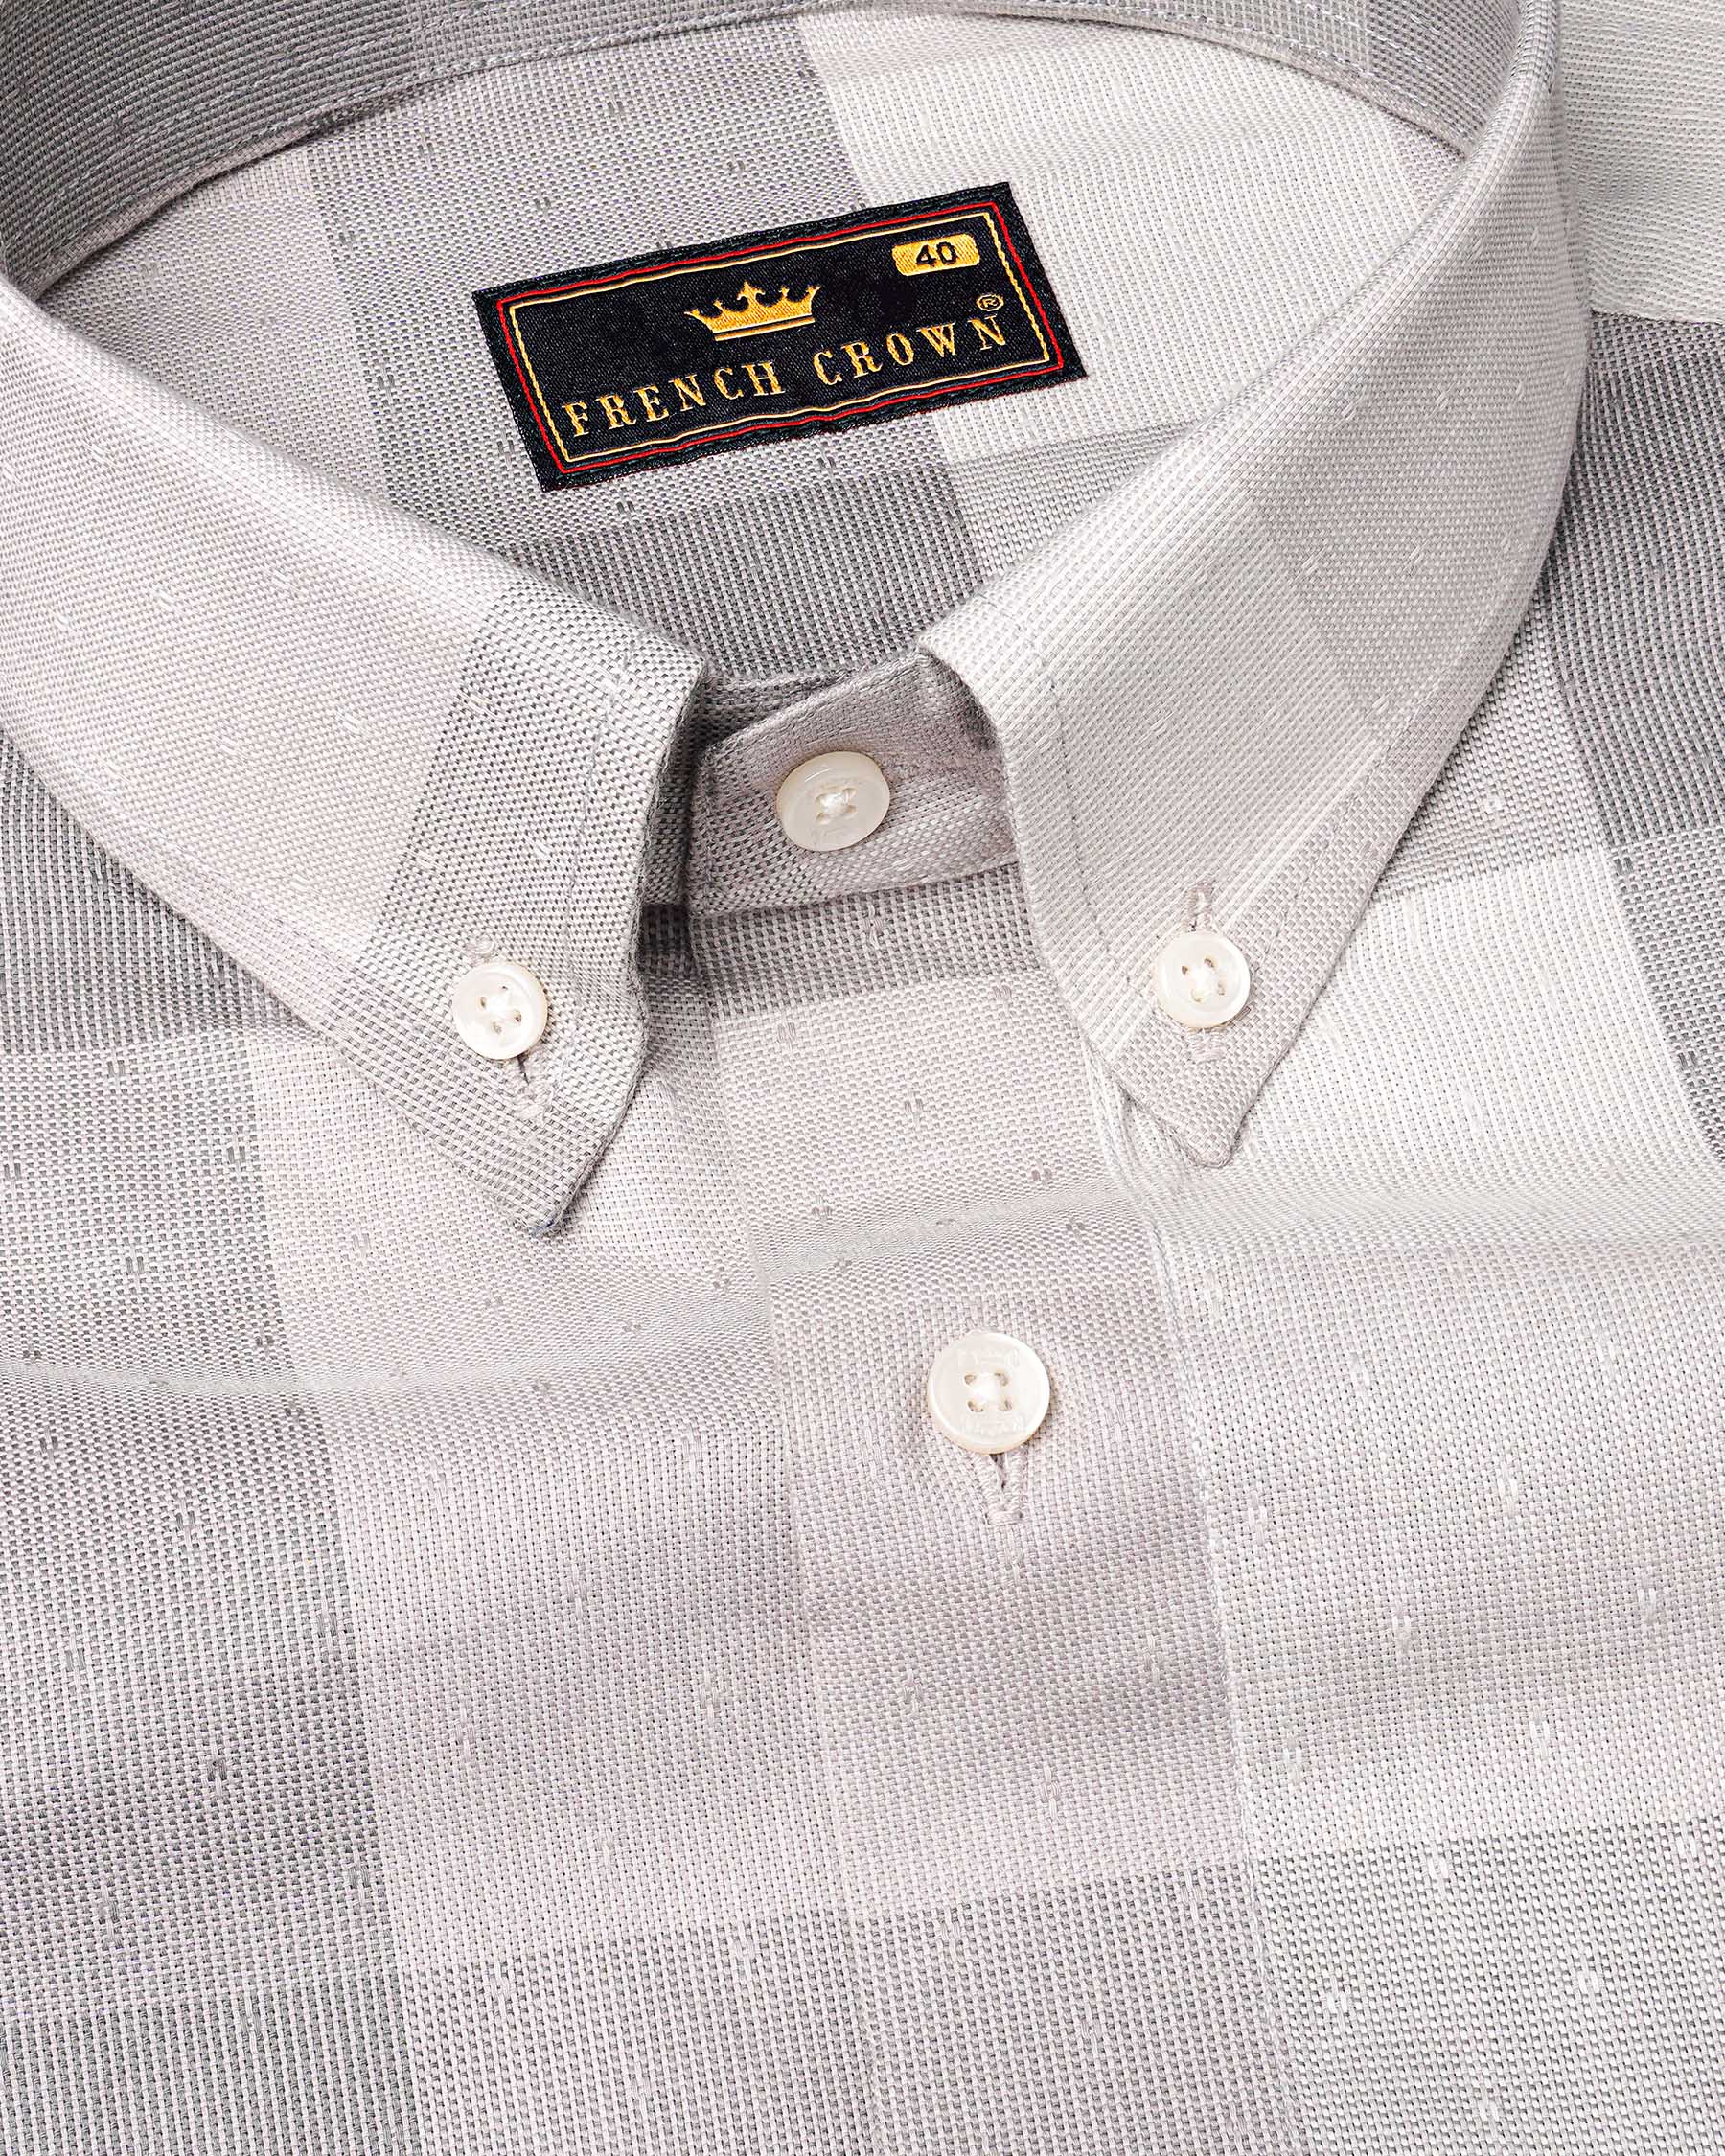 Gainsboro Gray and Soft Amber Plaid Dobby Textured Premium Giza Cotton Shirt